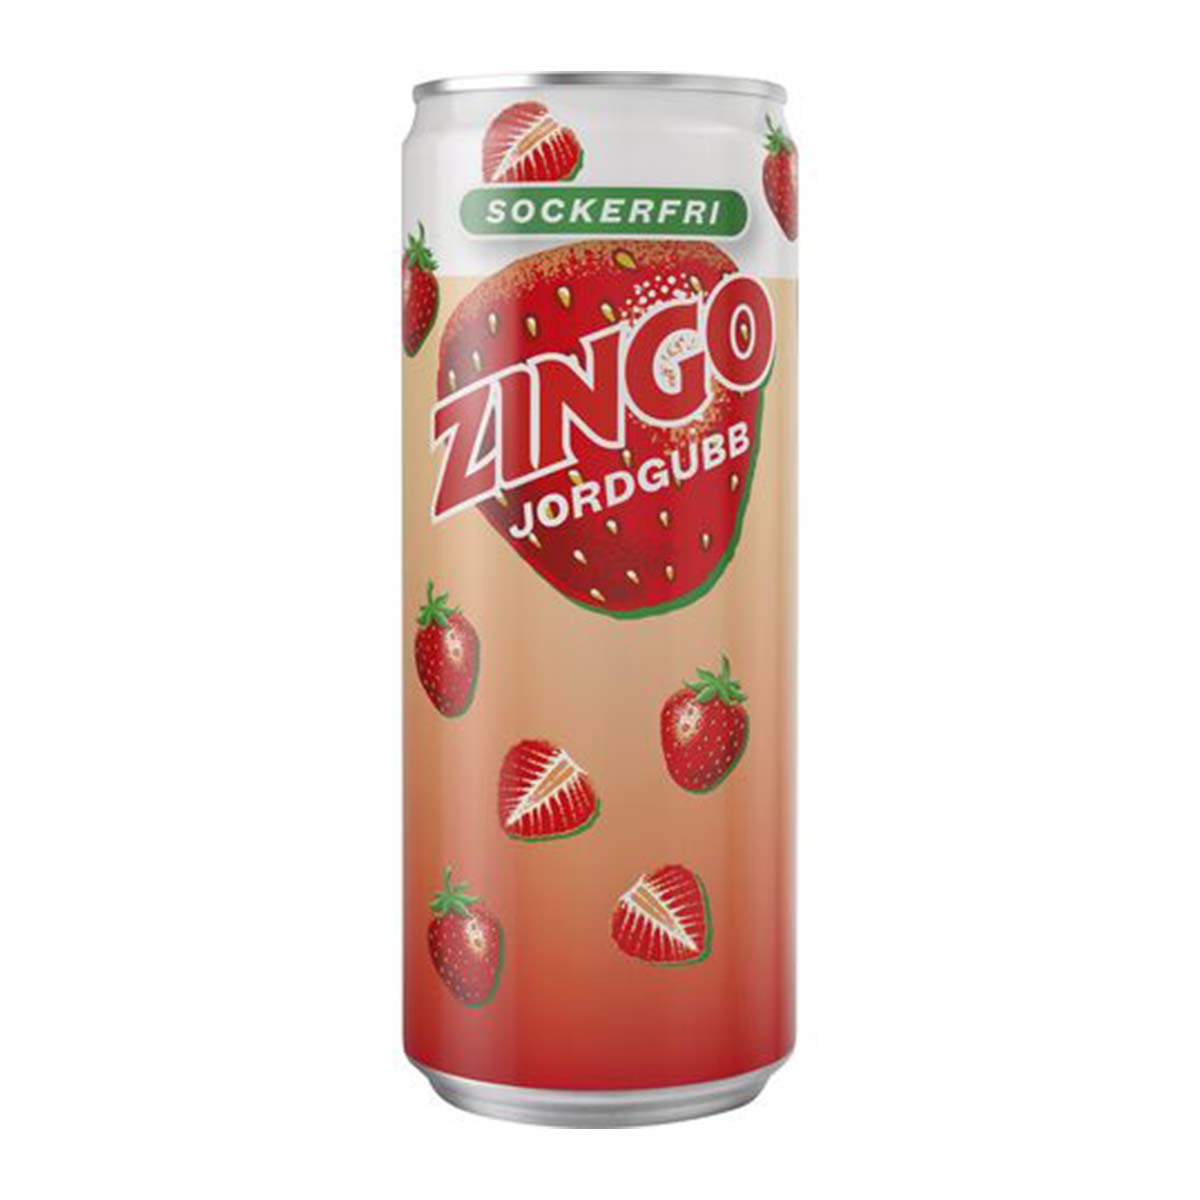 Läs mer om Läsk, Zingo jordgubb sockerfri 33 cl